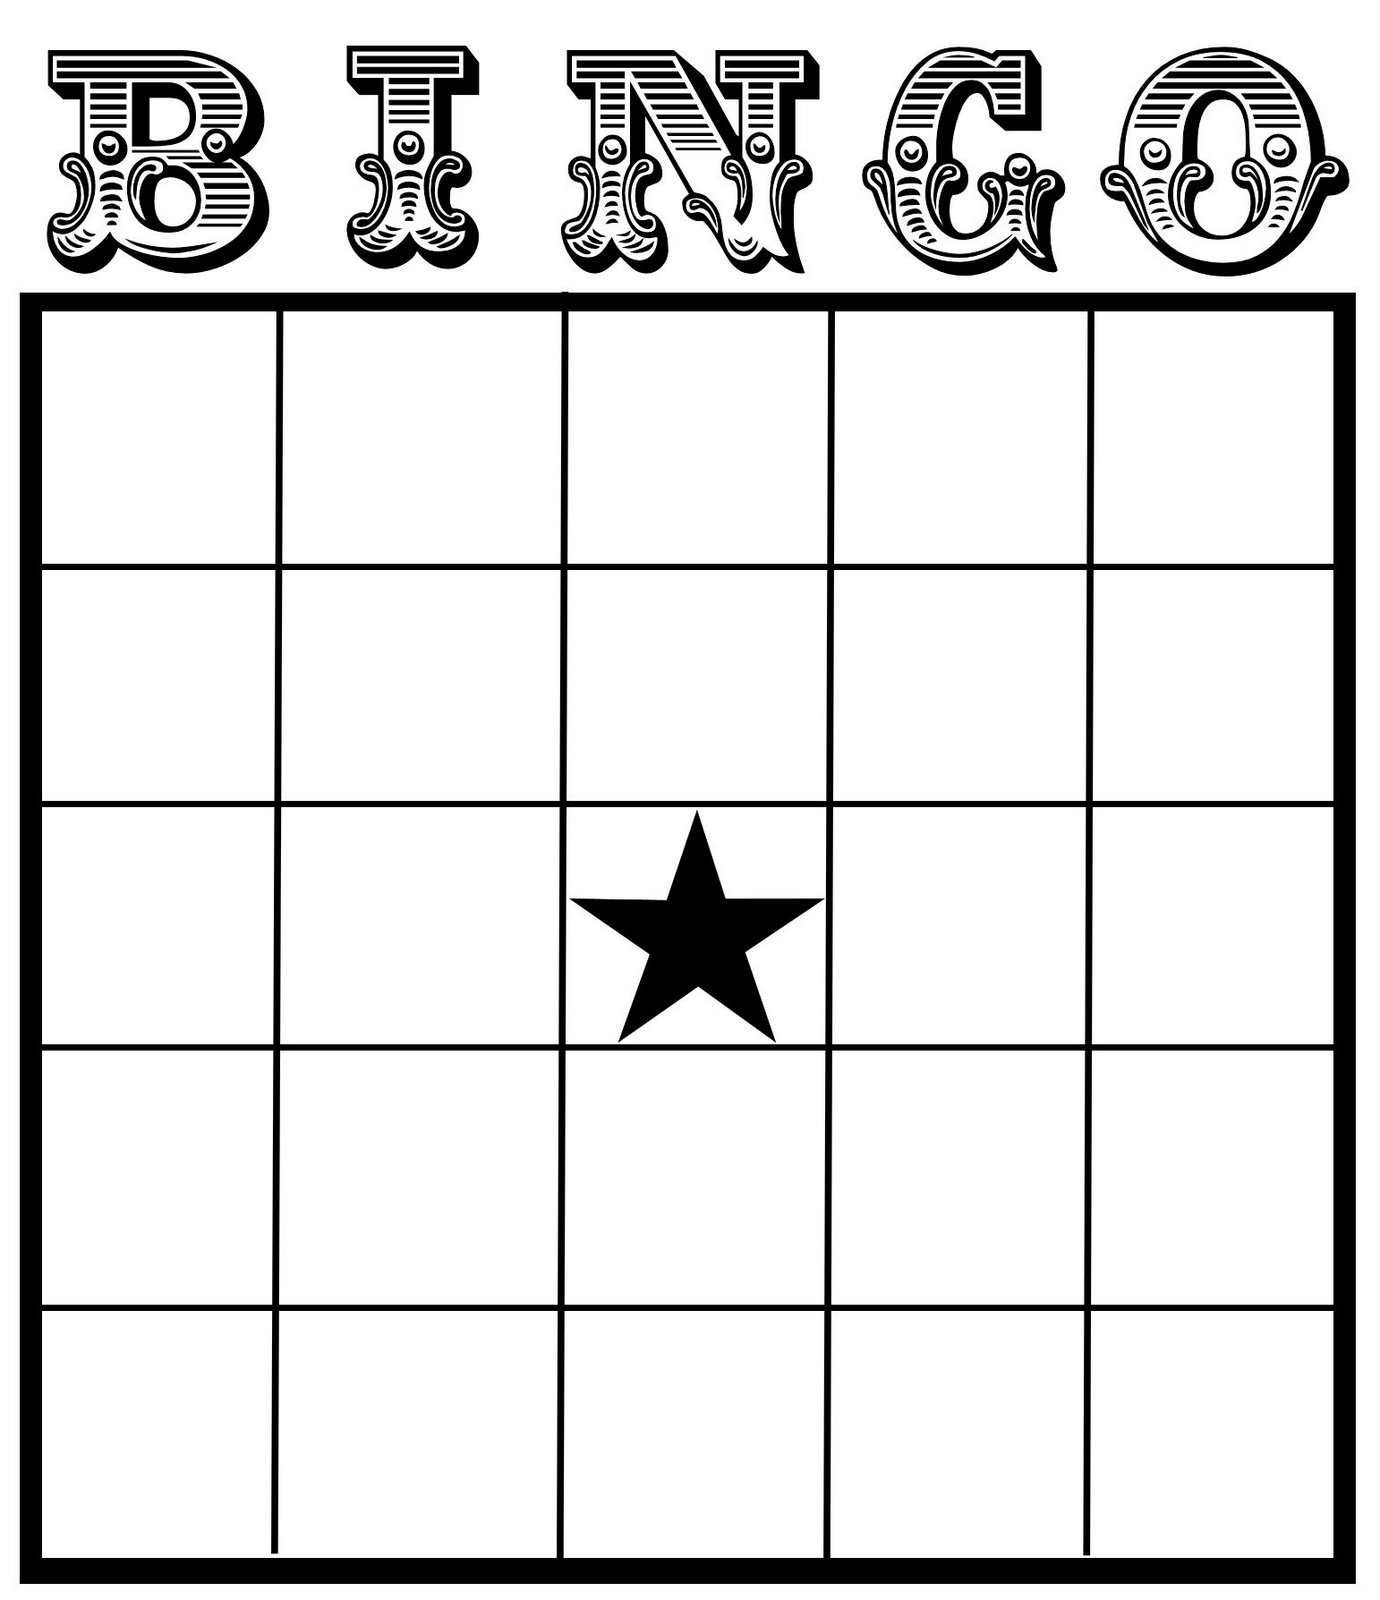 11-best-images-of-excel-bingo-card-printable-template-printable-blank